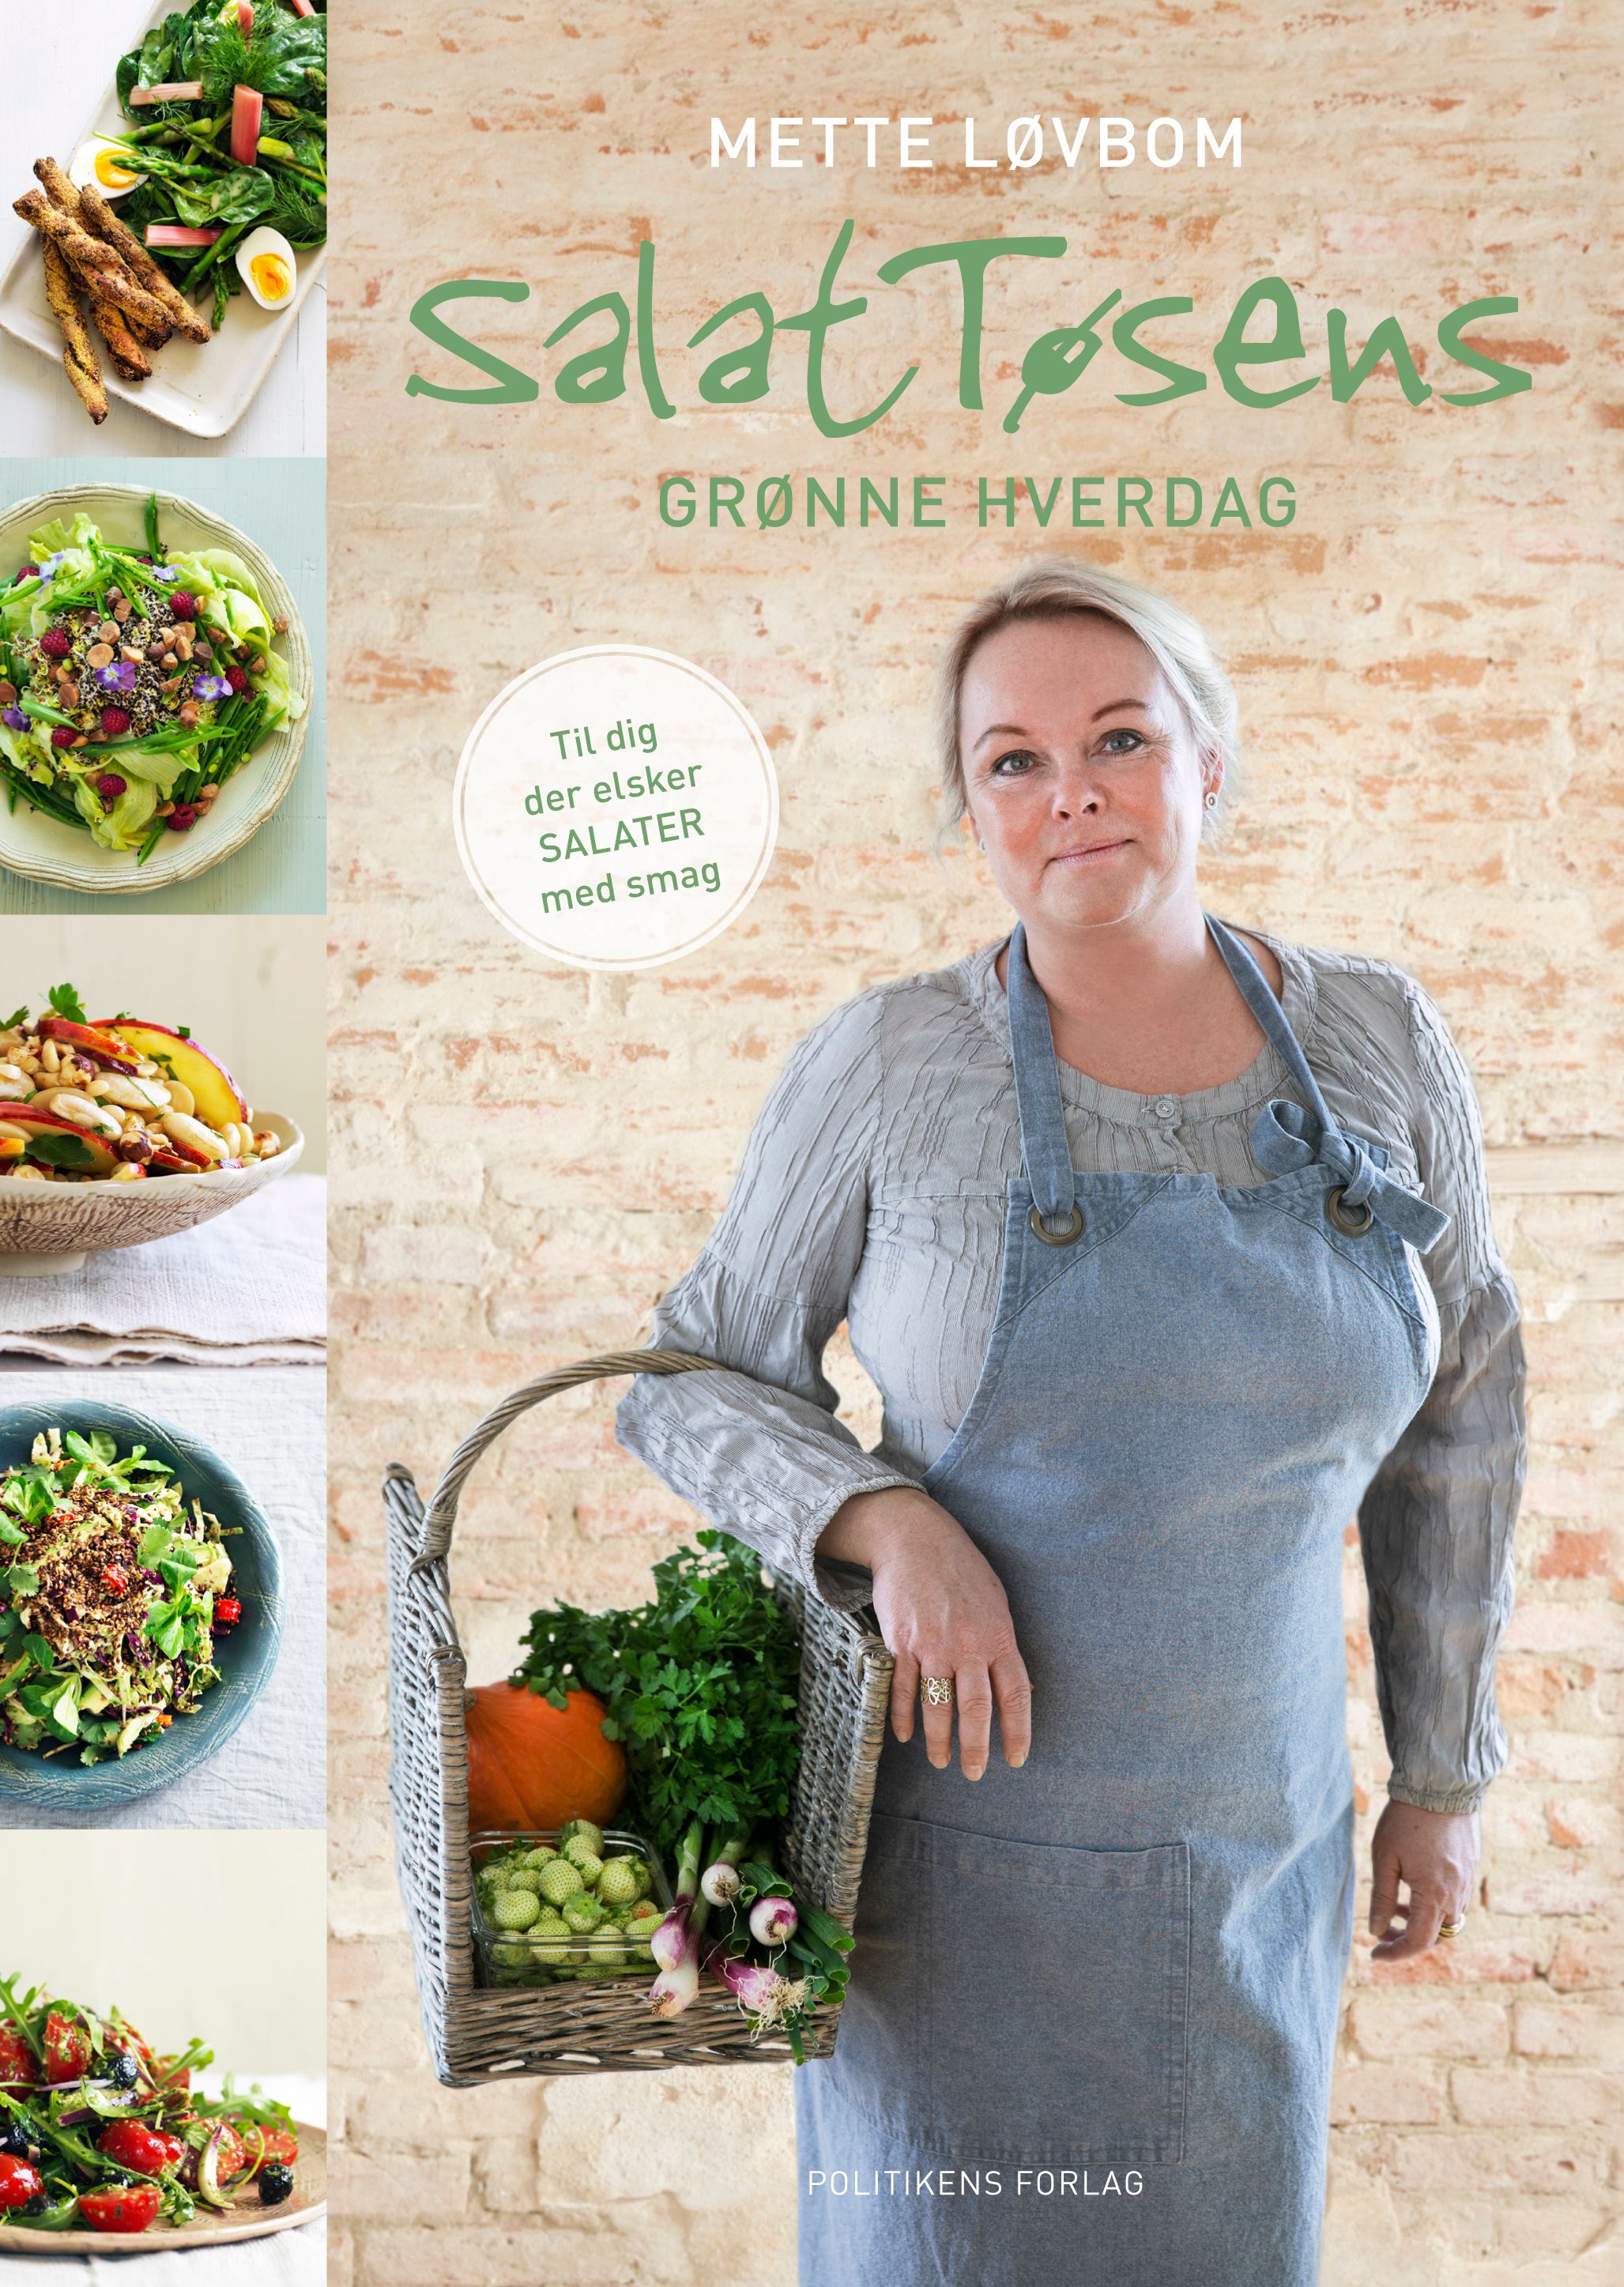 Salattøsens grønne hverdag, e-bog af Mette Løvbom